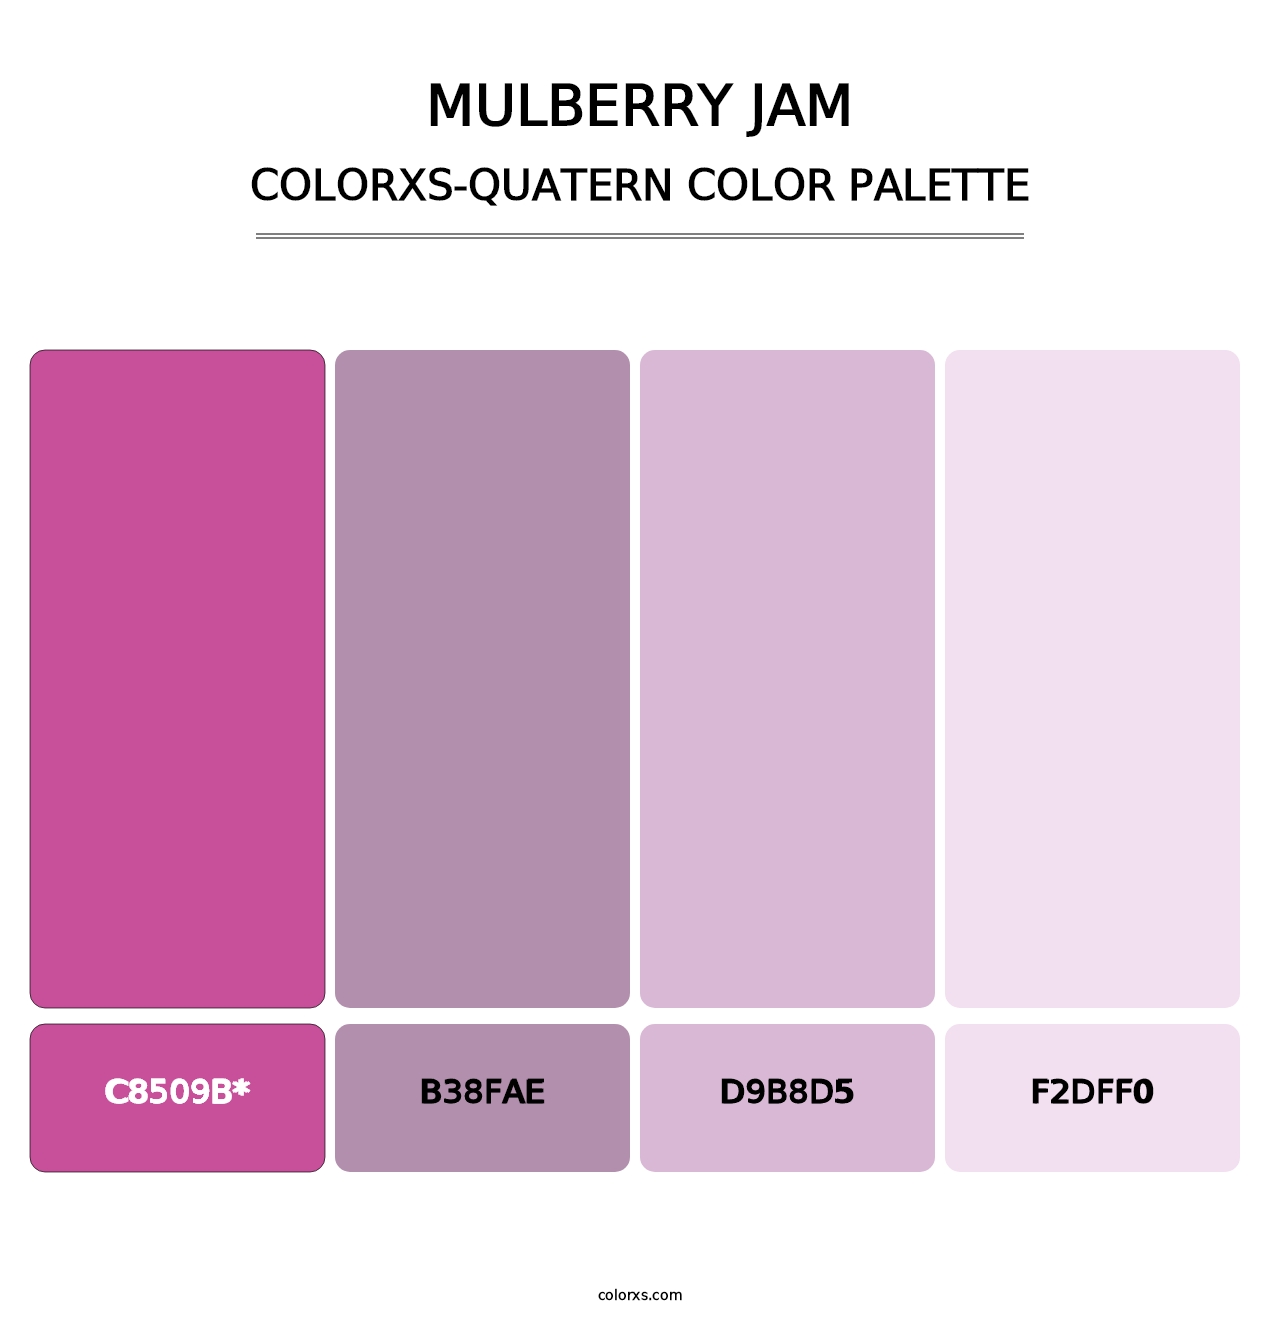 Mulberry Jam - Colorxs Quad Palette